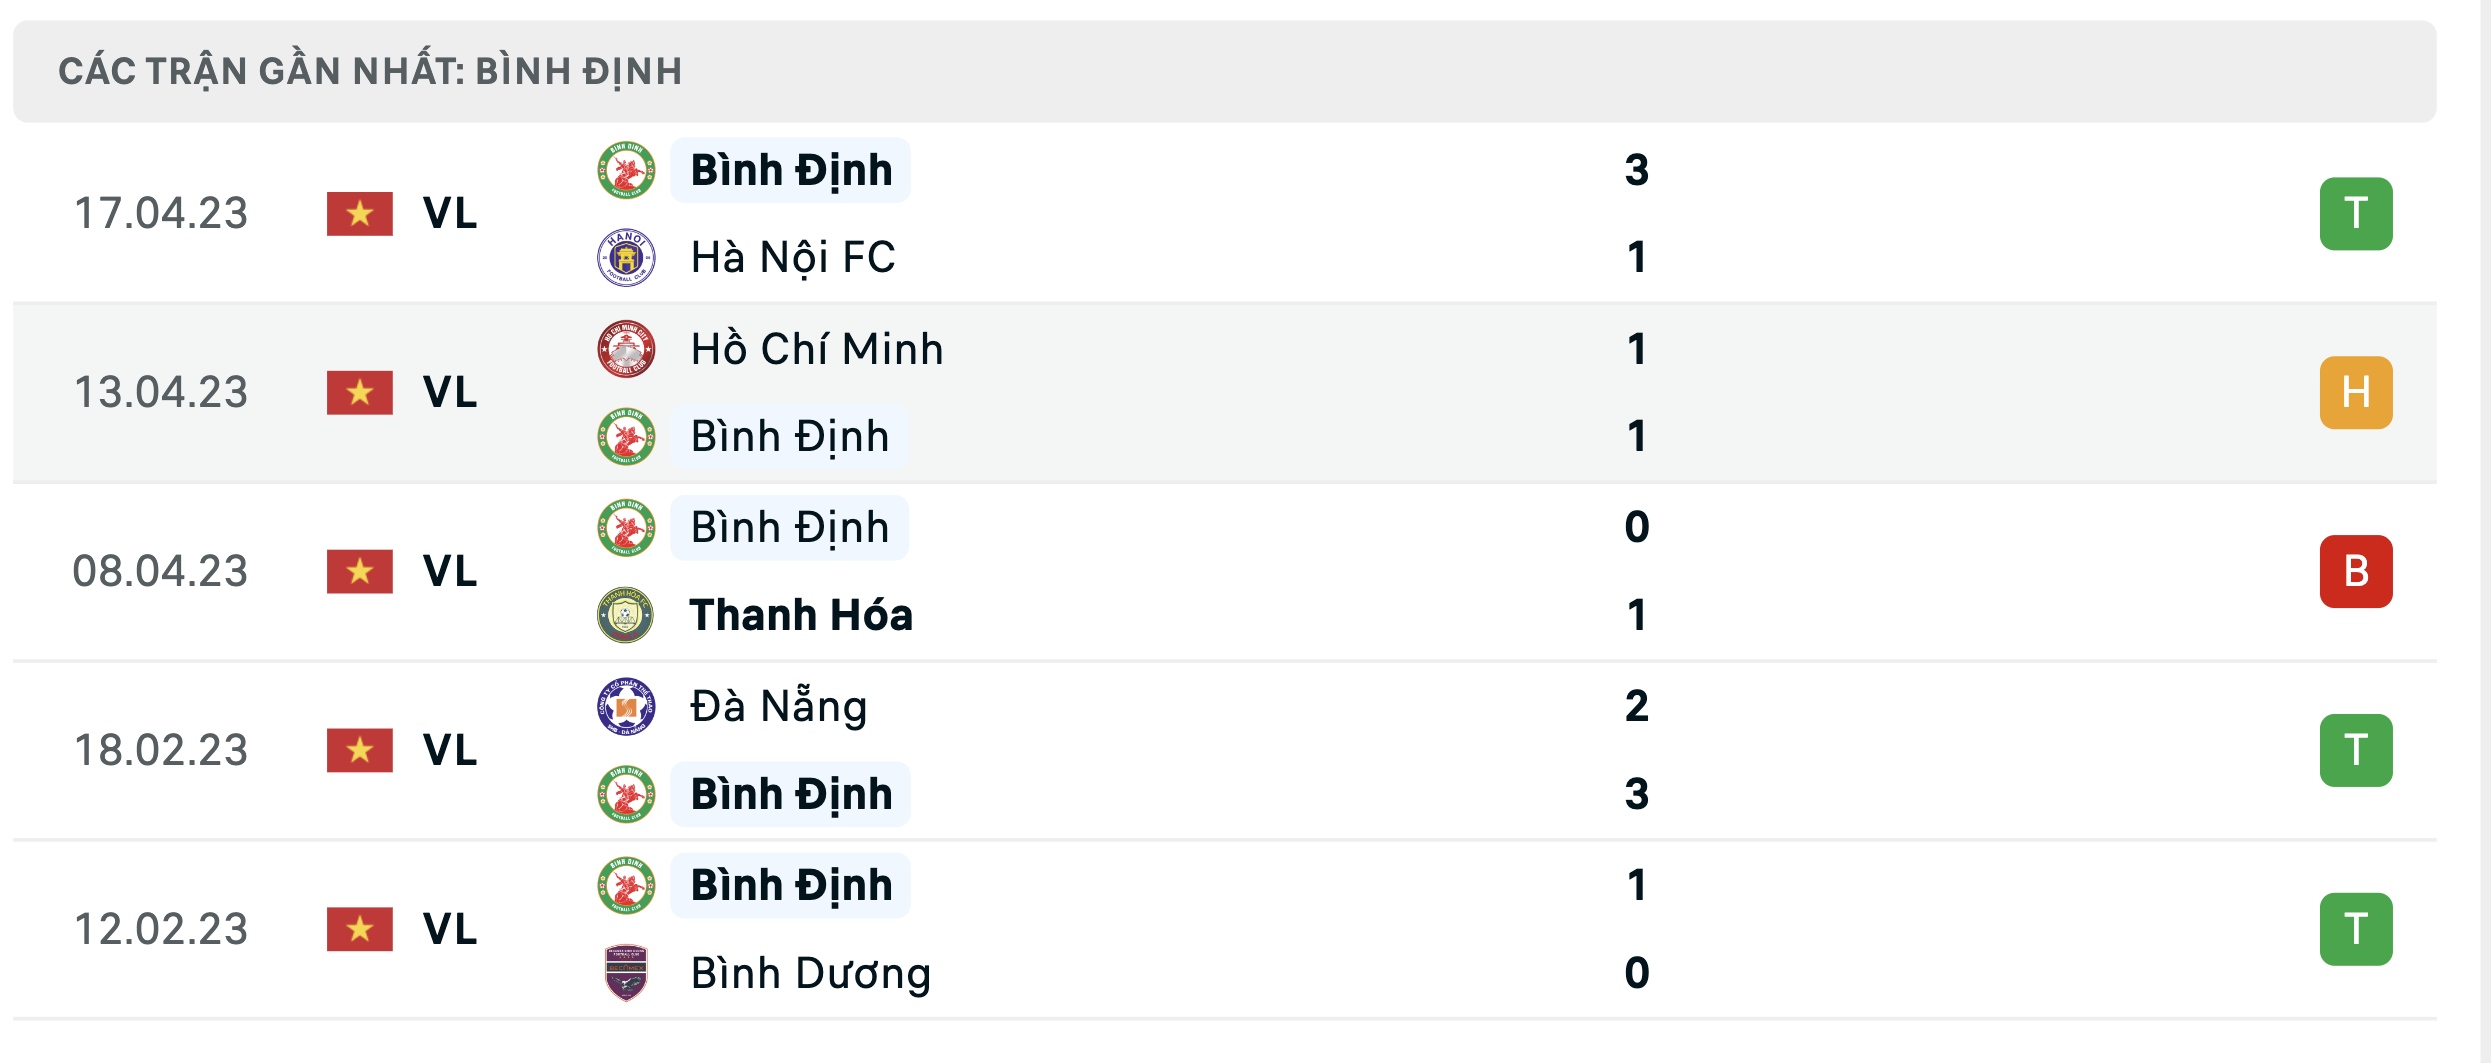 Các trận đấu gần nhất của Bình Định.